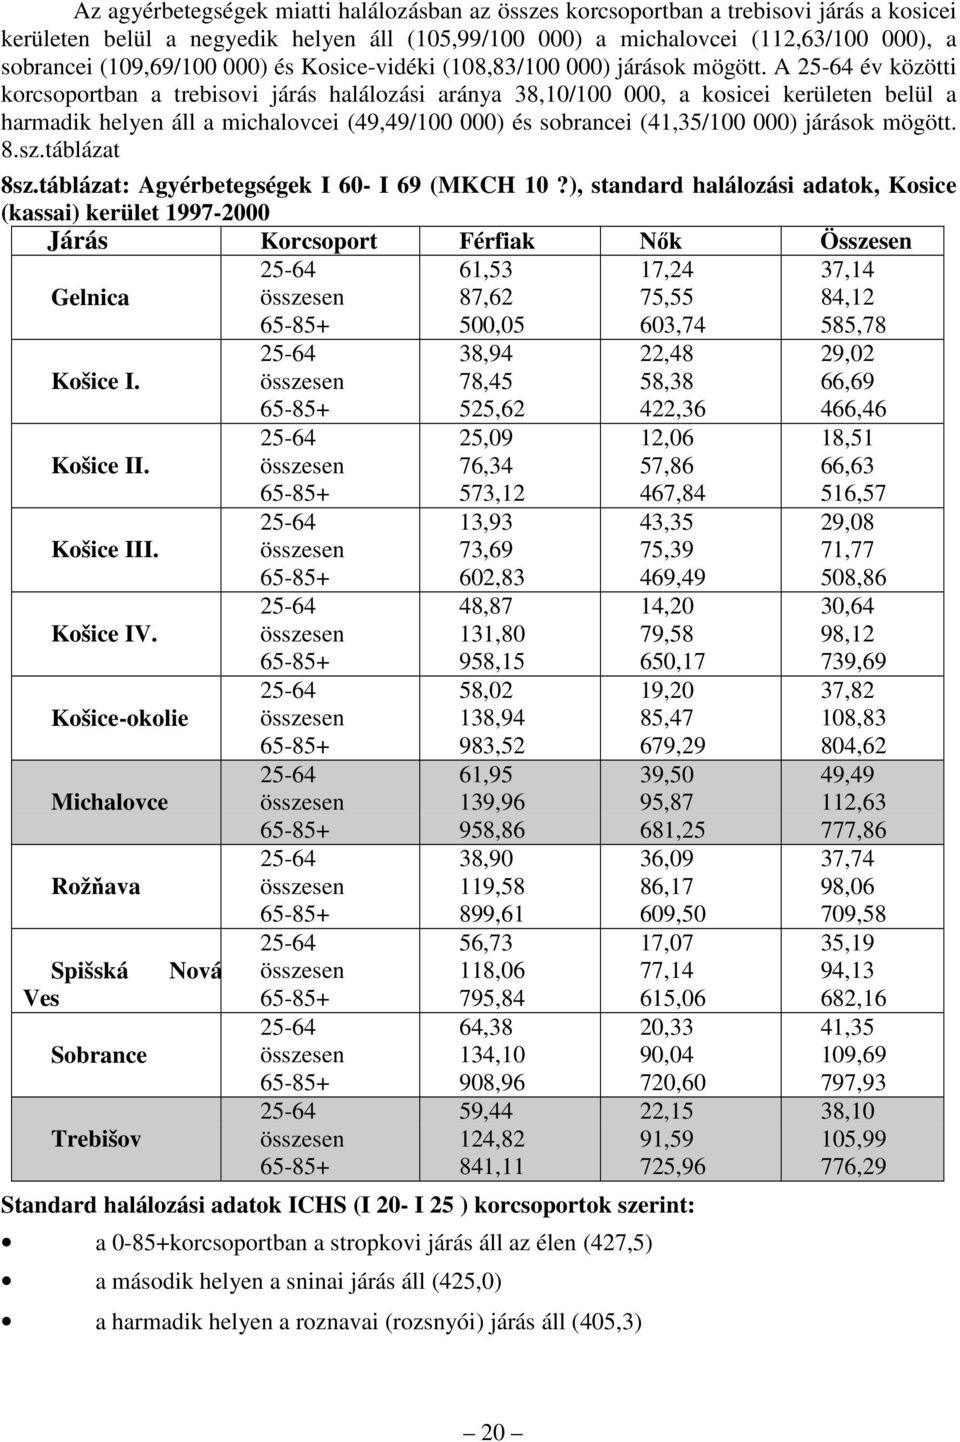 A 25-64 év közötti korcsoportban a trebisovi járás halálozási aránya 38,10/100 000, a kosicei kerületen belül a harmadik helyen áll a michalovcei (49,49/100 000) és sobrancei (41,35/100 000) járások